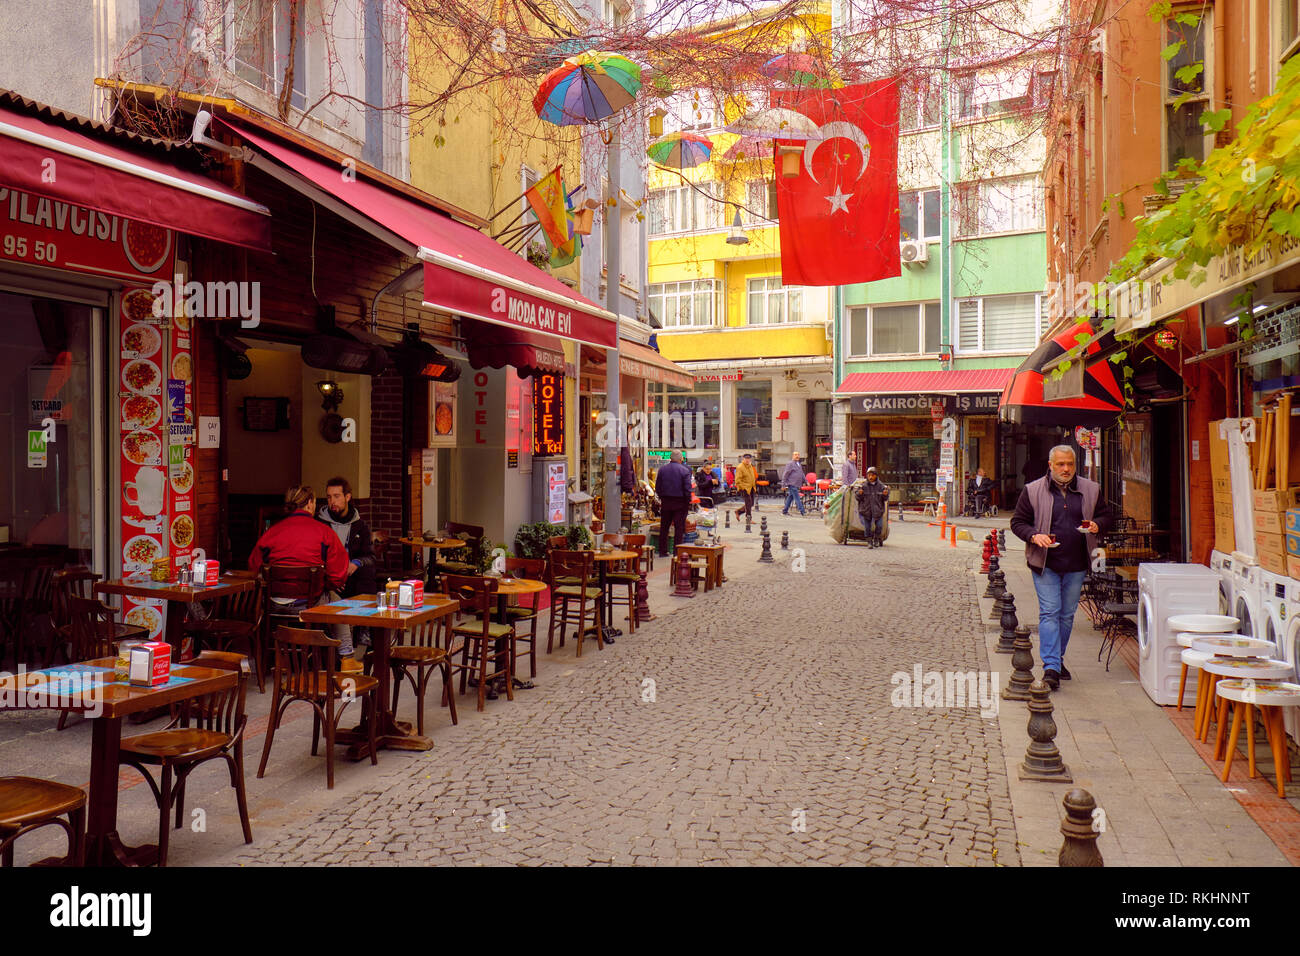 La vie locale dans une rue piétonne bordée d'affaires dans le coeur de Kadikoy, sur la rive asiatique d'Istanbul, Turquie - décembre Banque D'Images